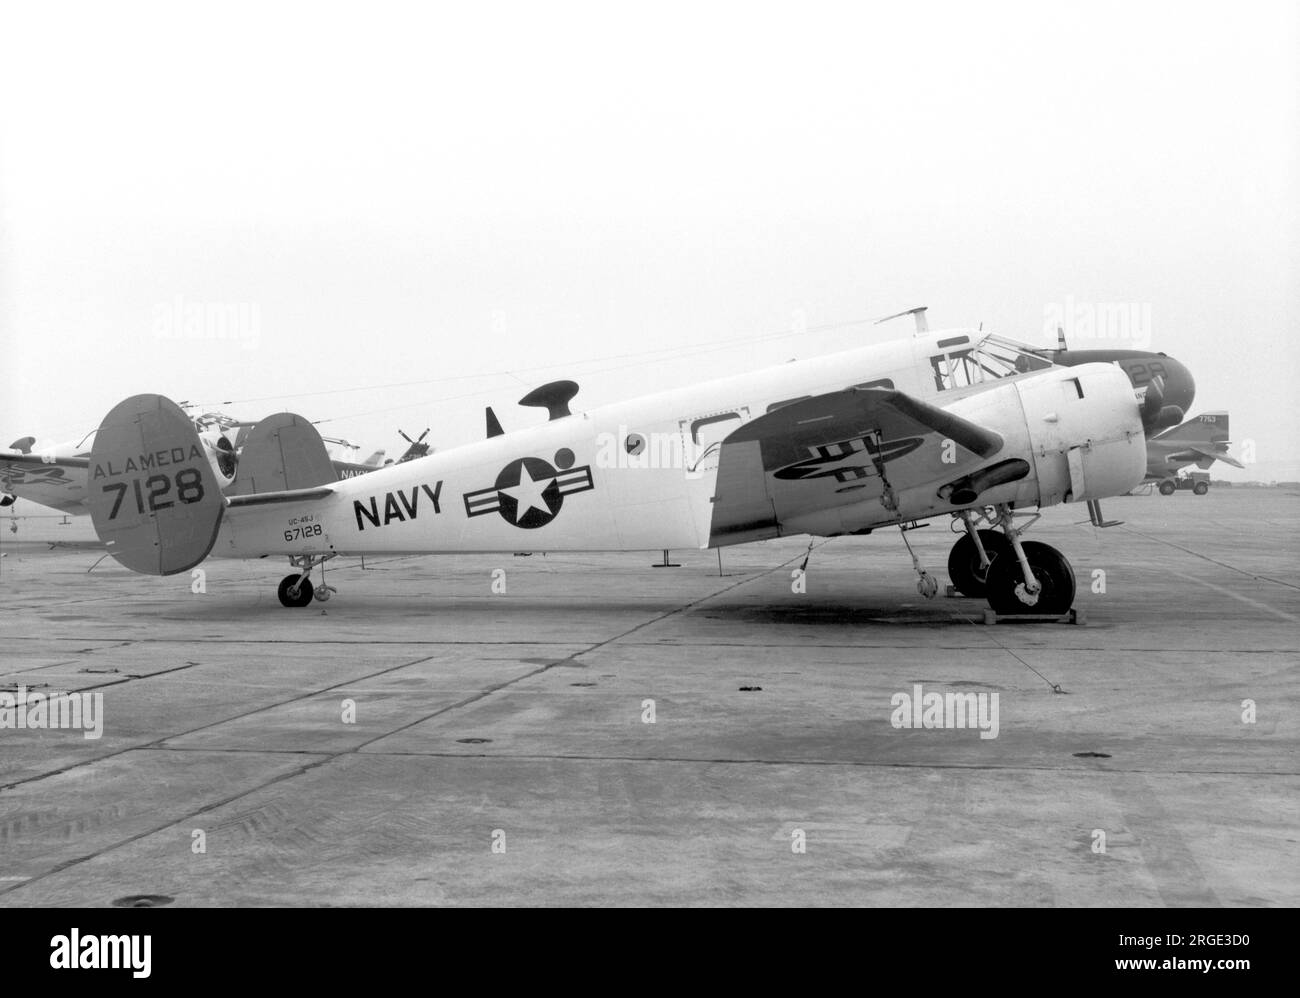 United States Navy â€“ Beechcraft UC-45J 67128 (msn n-934), presso NAS Alameda il 4 novembre 1967. (Ex USAAF AT-7 41-21106 (MSN 1121) trasferito alla US Navy nel 1946. Rigenerato da Beech come JRB-5 (MSN N-309) febbraio 1949. Rigenerato da Beech come SNB-5 (MSN N-934) Giu 1952). Foto Stock